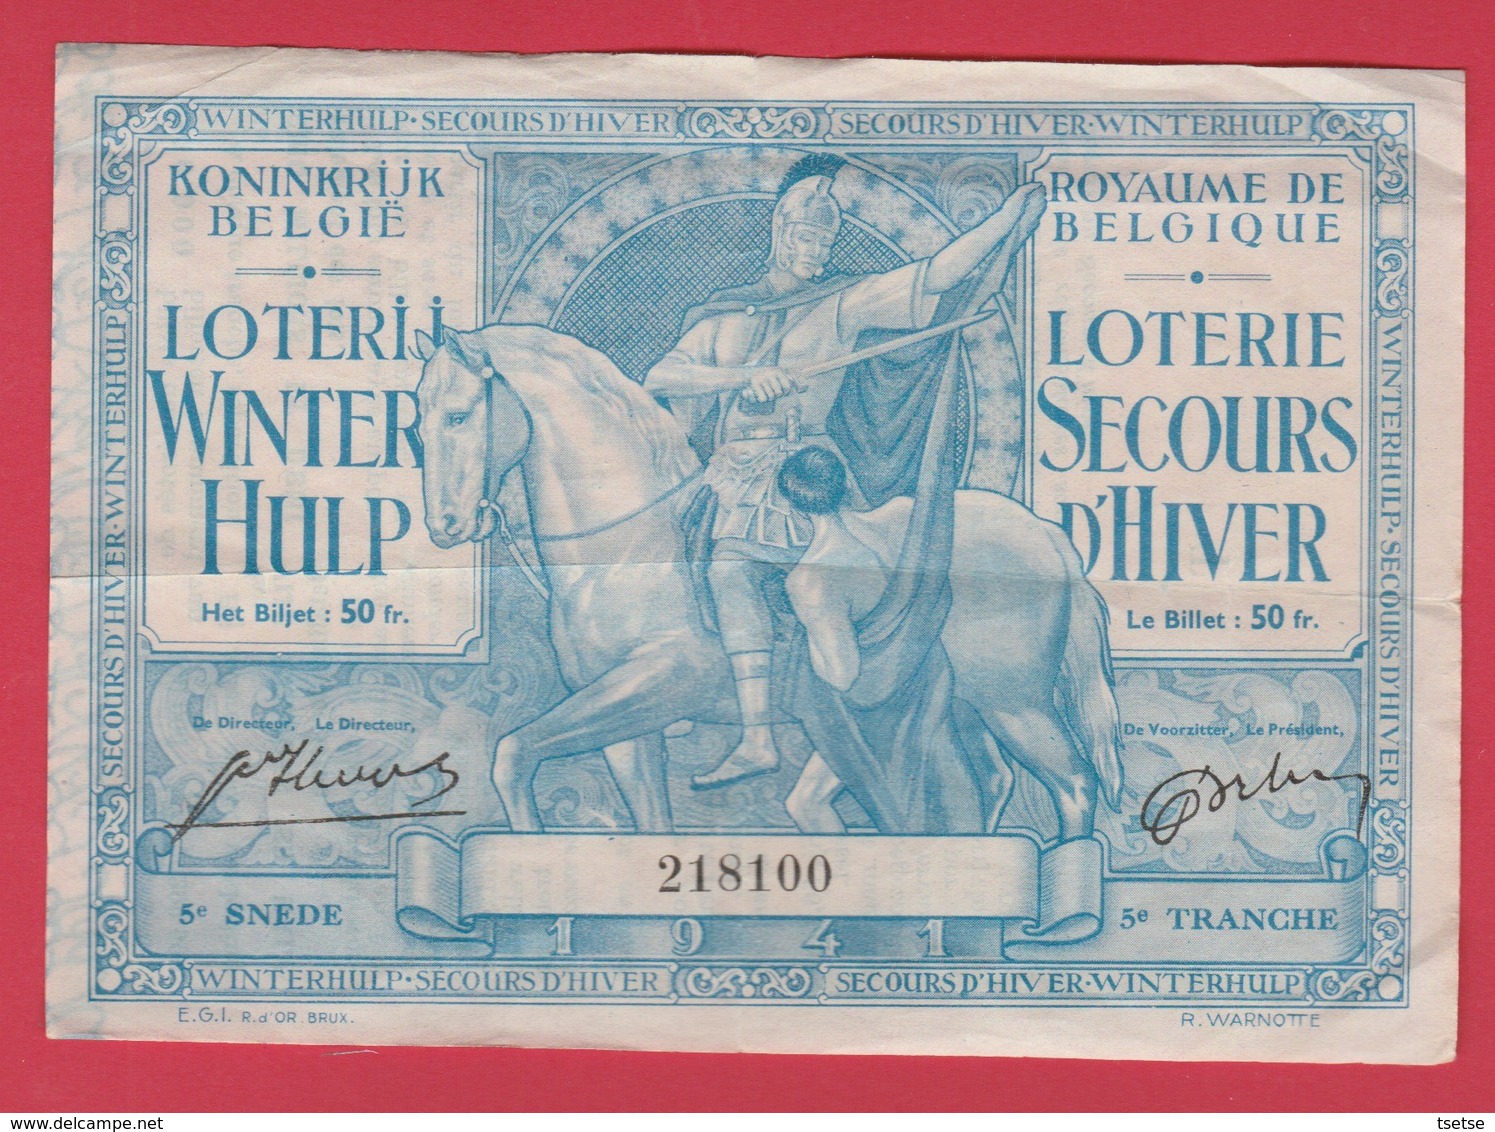 Loterie Secours D'Hiver , Billet 50 Fr / Lorerij Winter Hulp, Biljet 50 Fr - 1941 ( Voir Verso ) - Guerra 1939-45